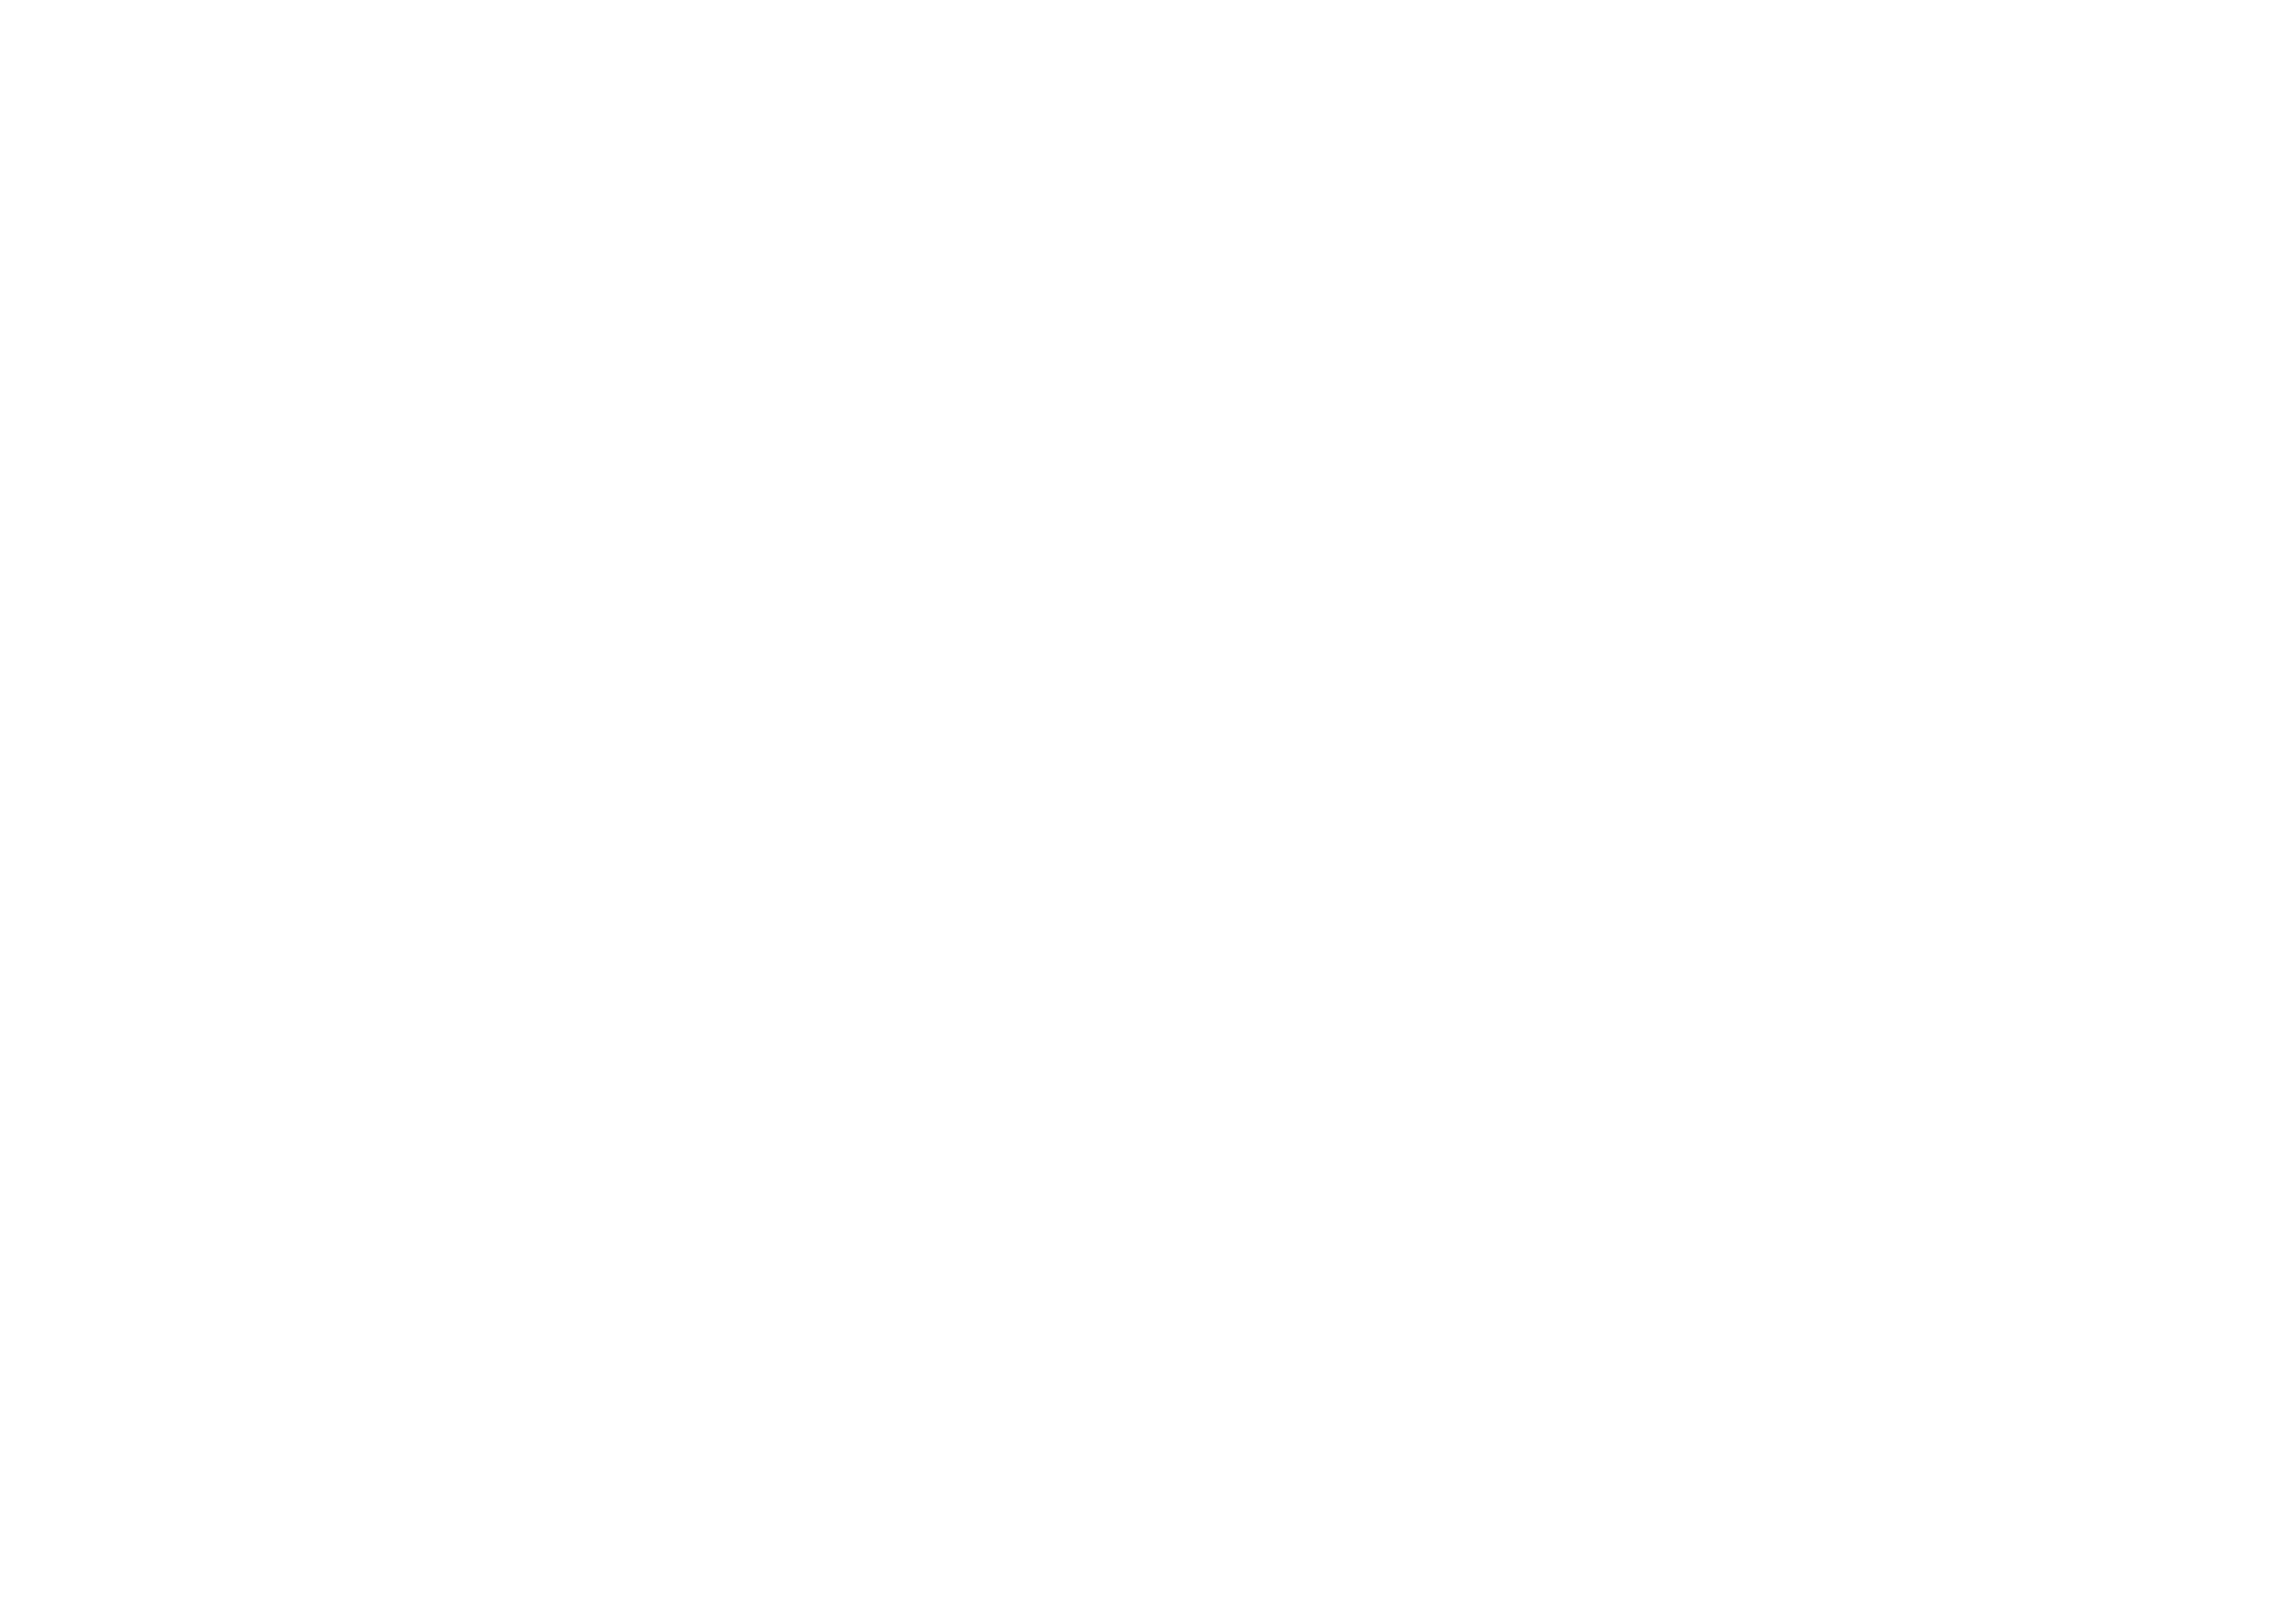 Deep Delay Management